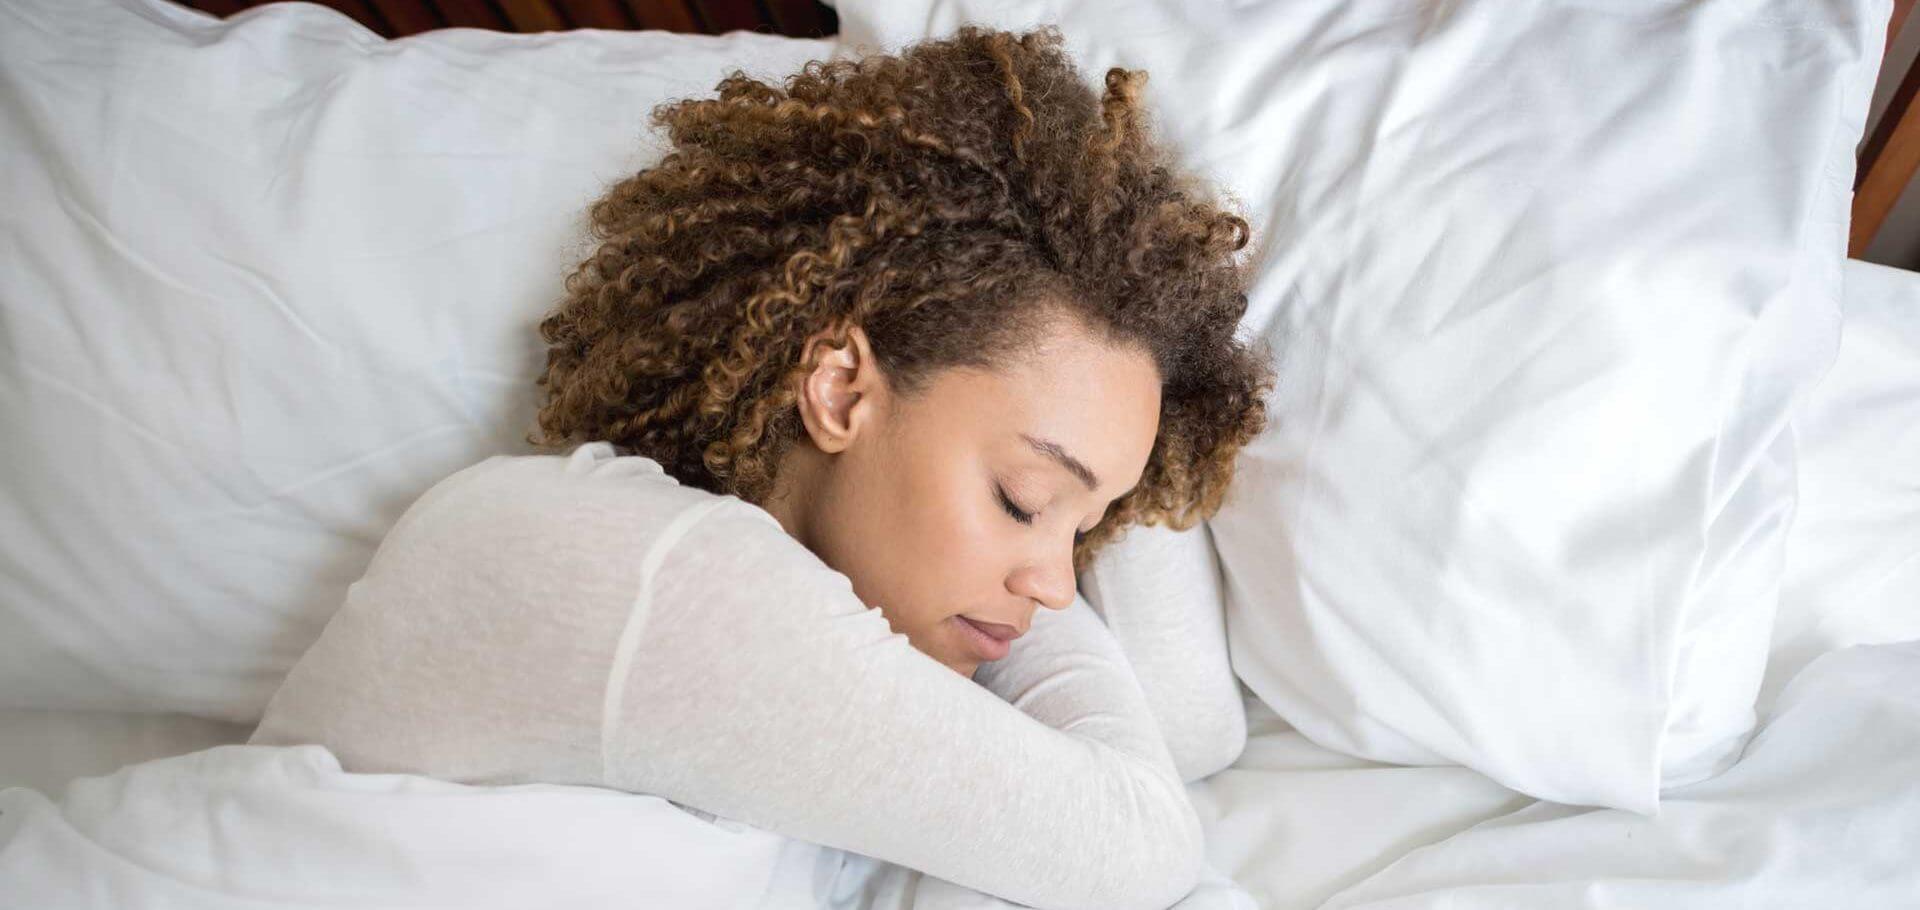 Obtenez le repos que vous méritez: la glycine peut vous aider à profiter d'un sommeil plus profond et plus sain